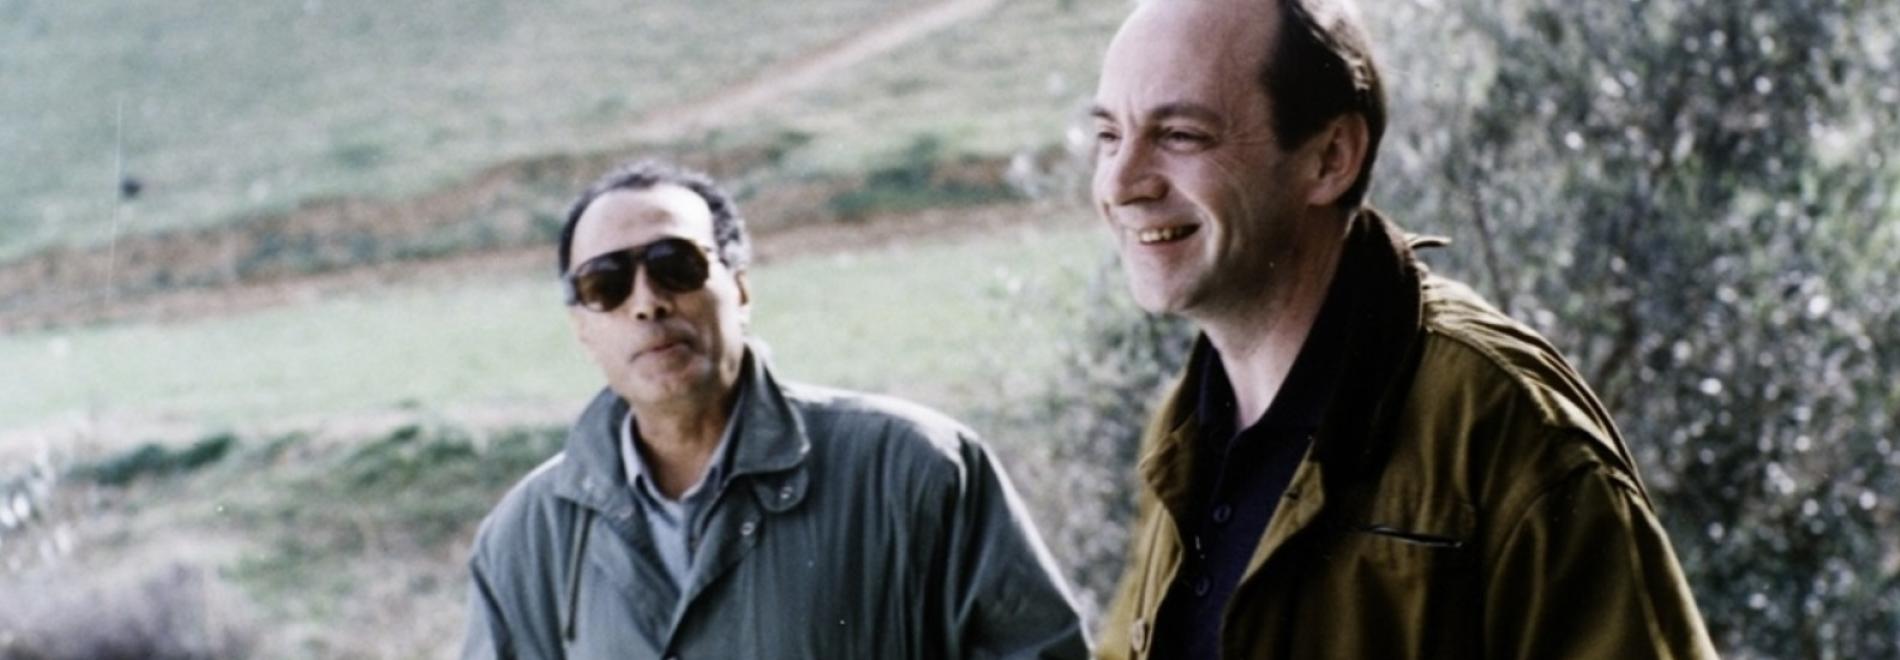 Cinéma de notre temps: Abbas Kiarostami, vérités et songes